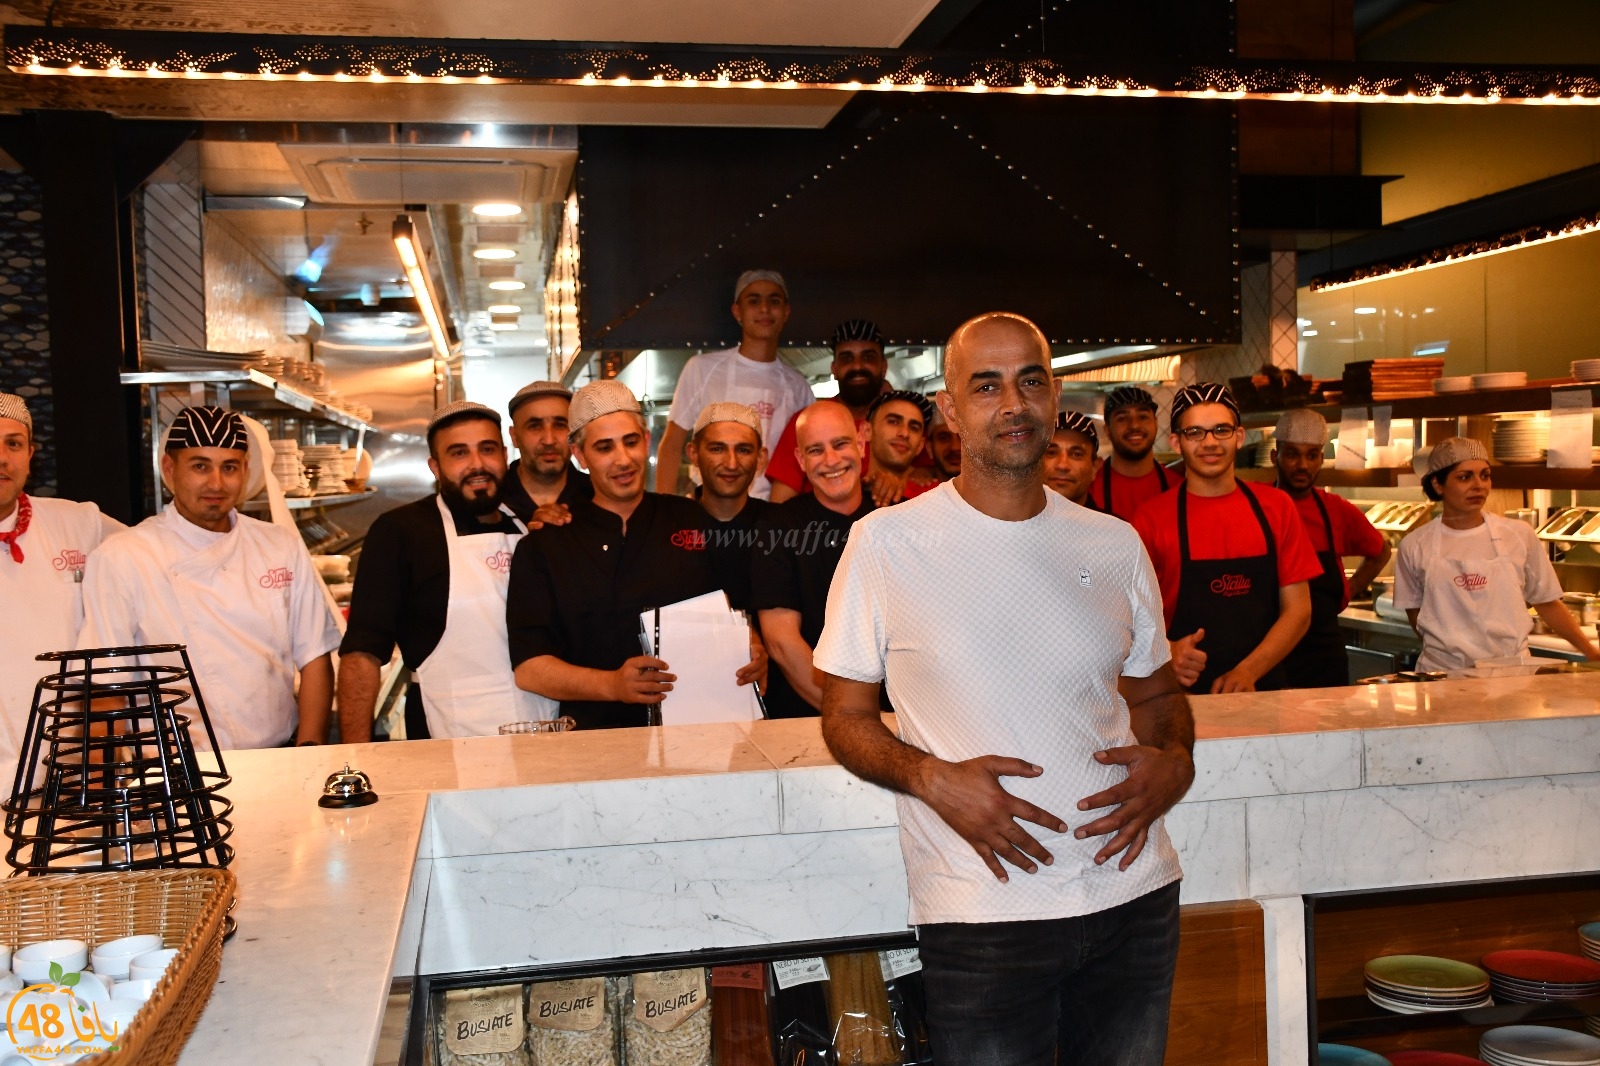 فيديو: افتتاح مطعم صقلية في مرفأ ميناء يافا لأشهى الوجبات البحرية على الطريقة الايطالية 